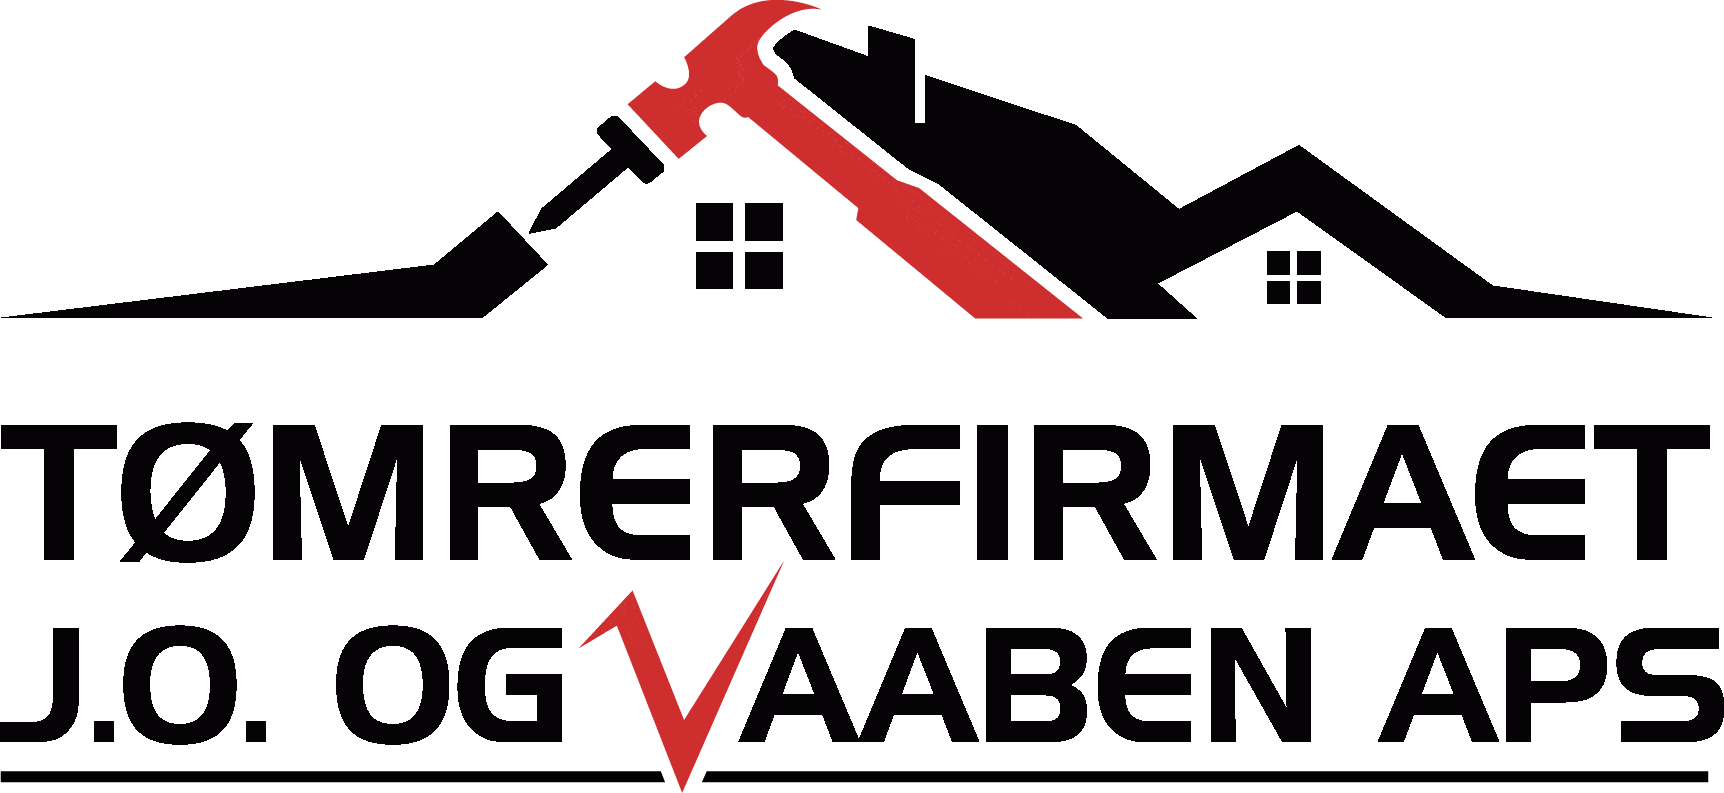 Tømrerfirmaet J.O og Vaaben ApS - logo